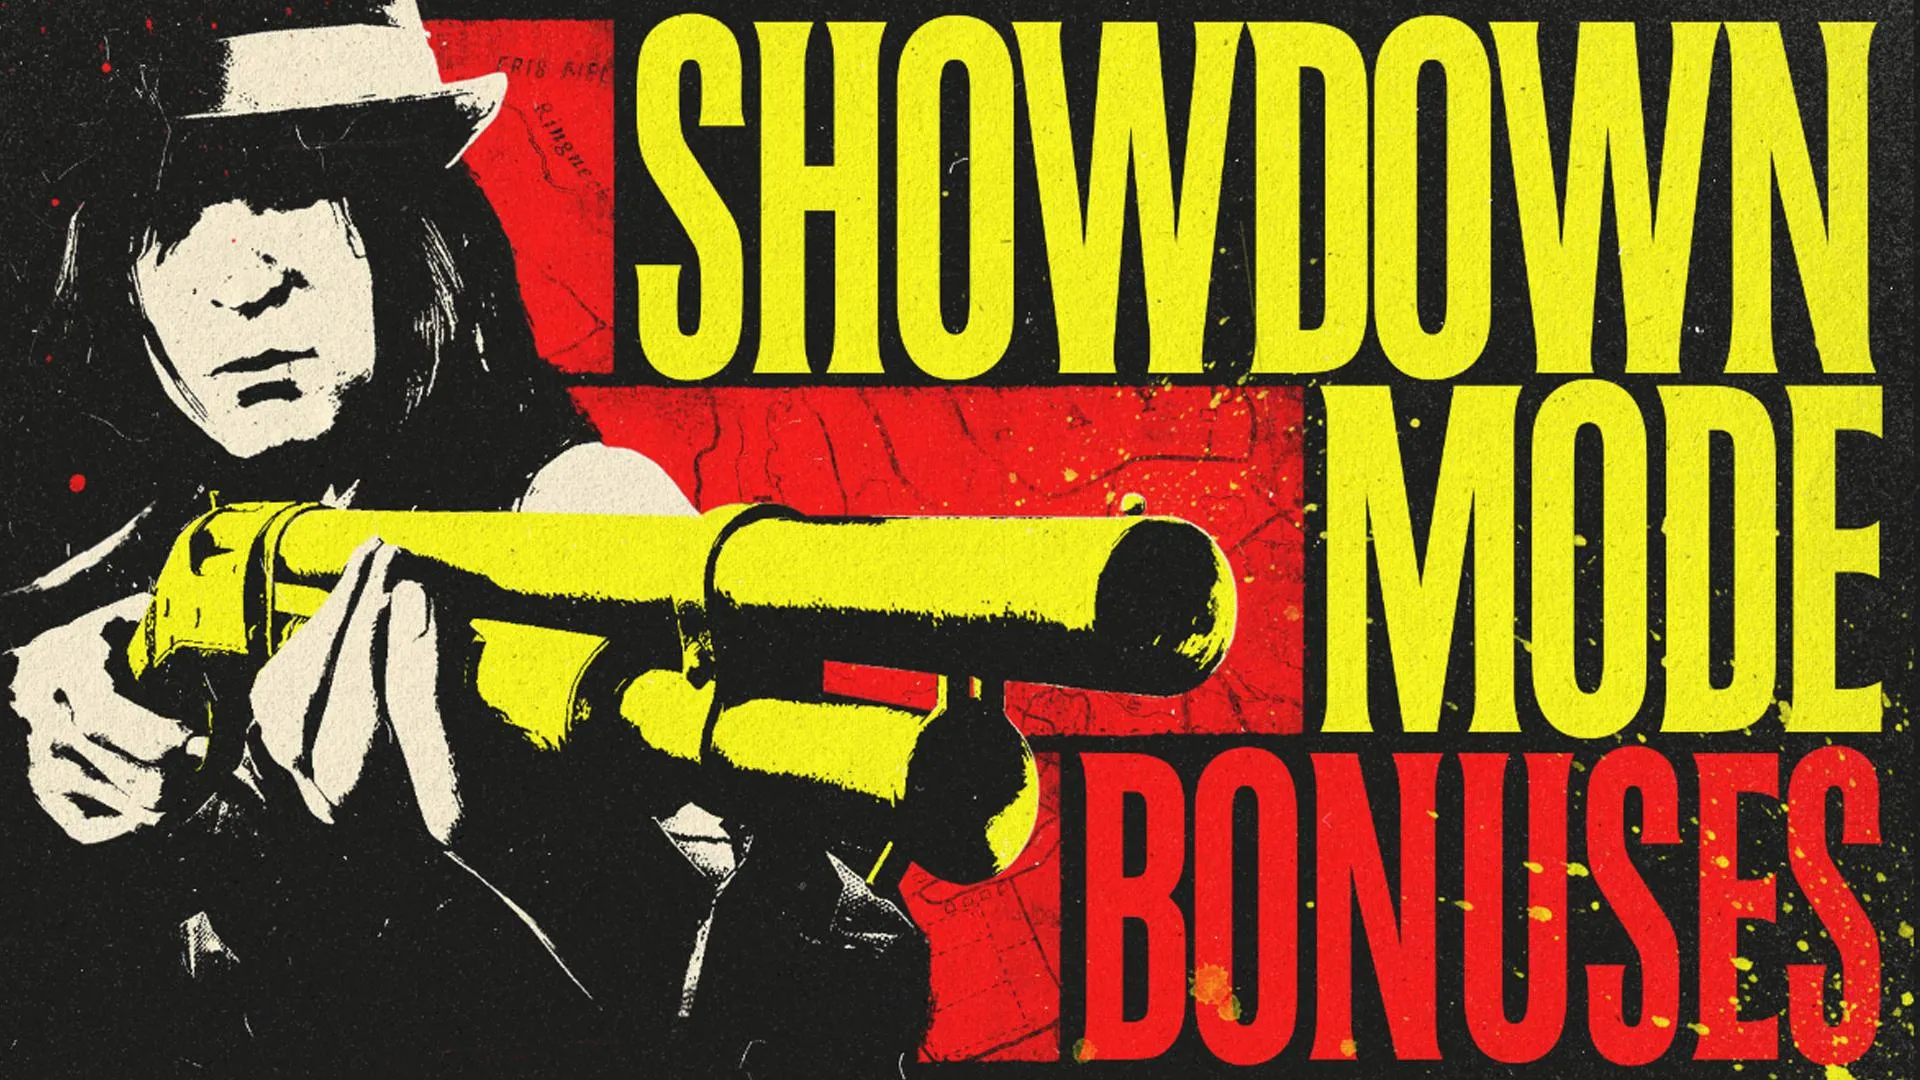 red dead online showdown mode bonuses